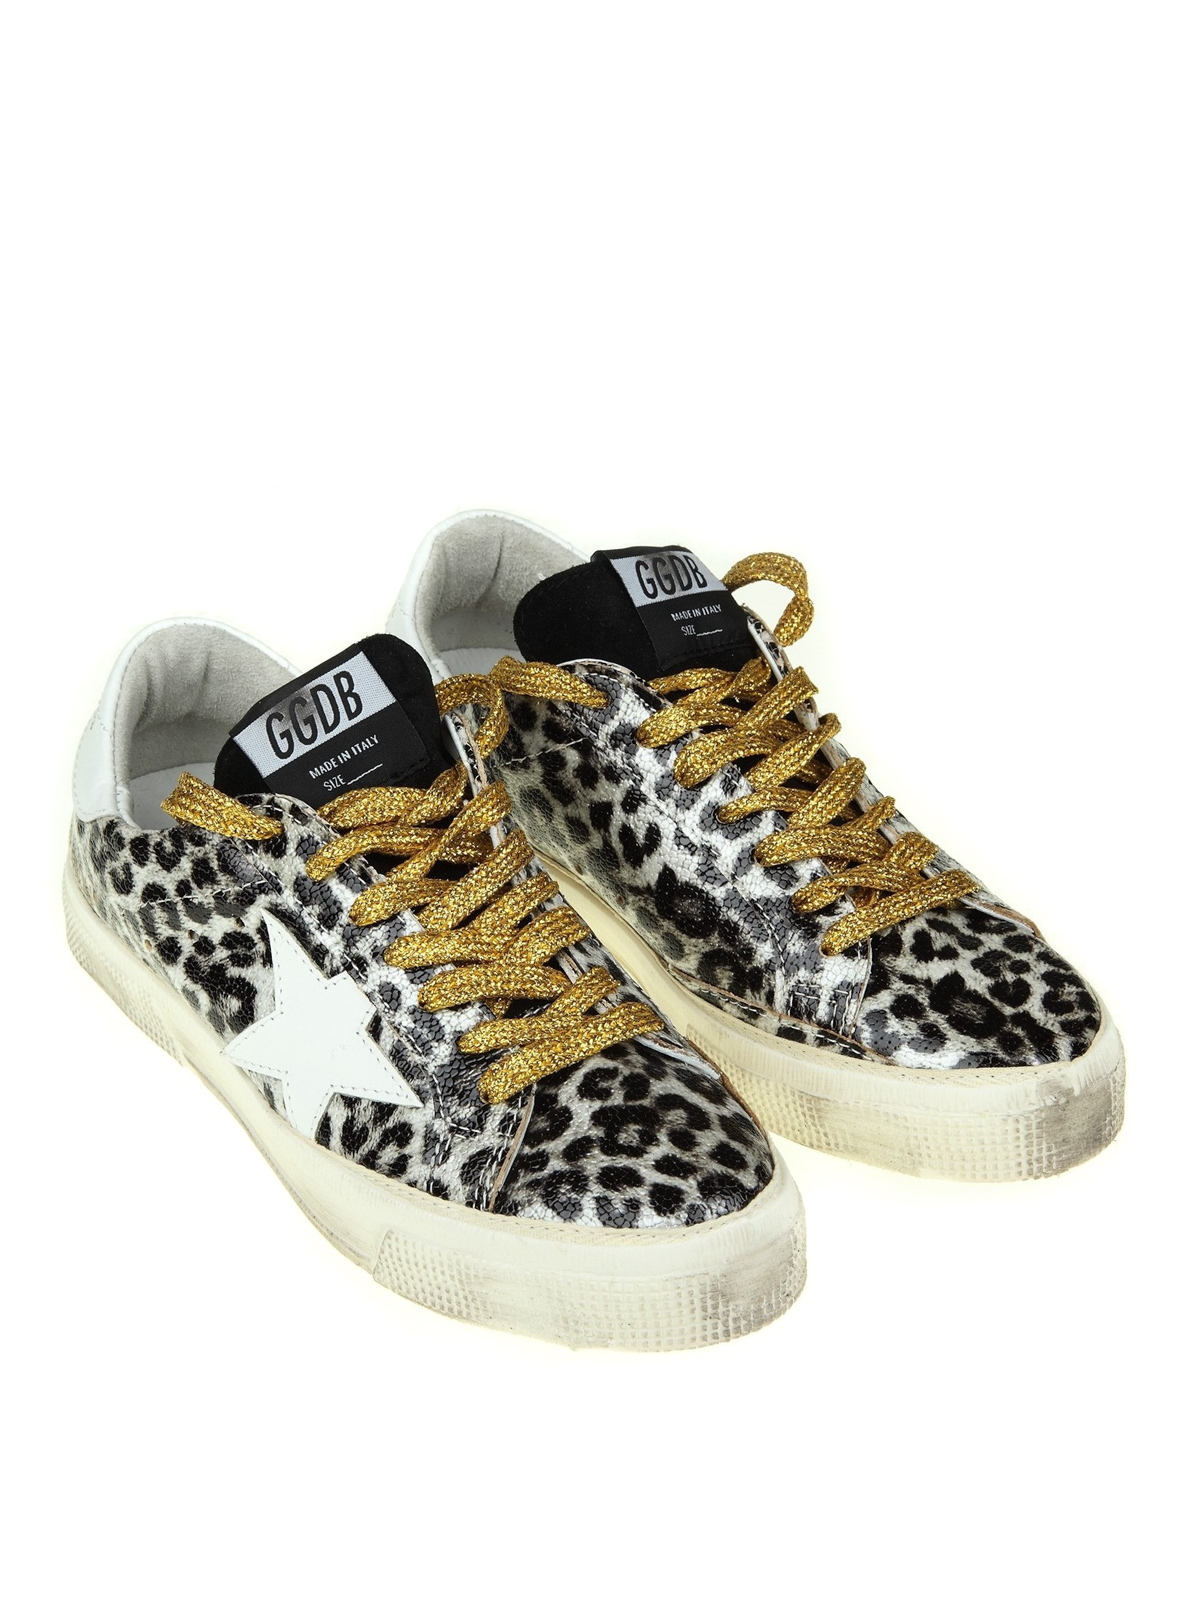 sneakers leopardate